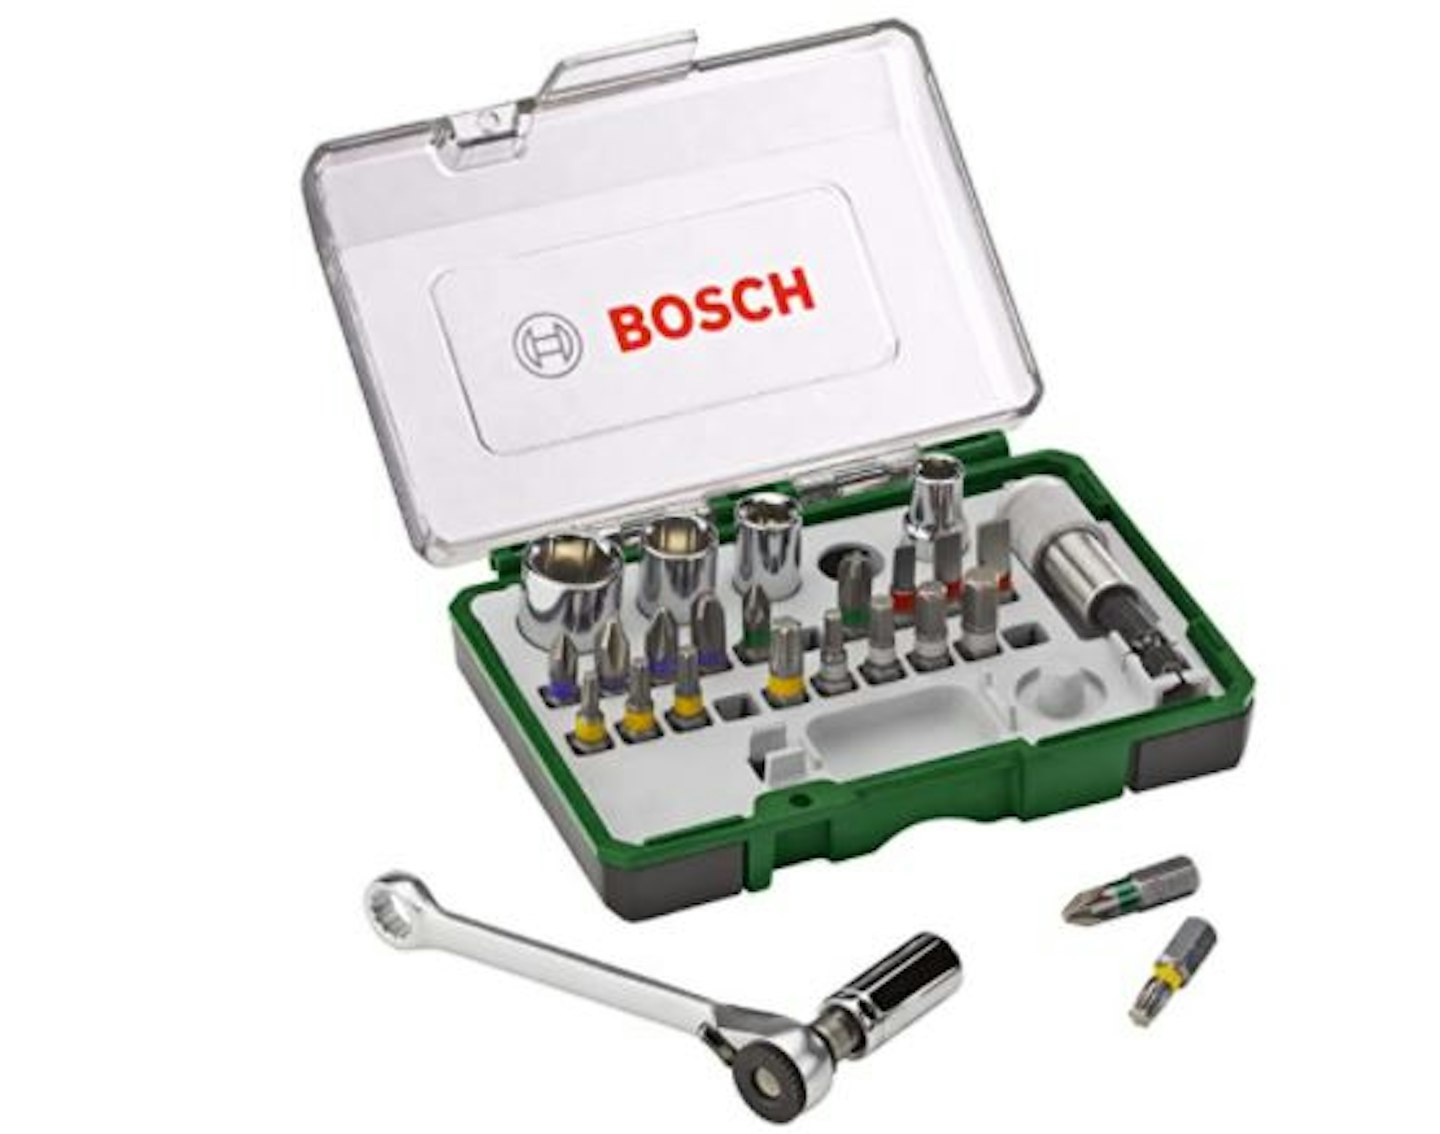 Bosch 27-Piece Screwdriver Bit and Ratchet Set